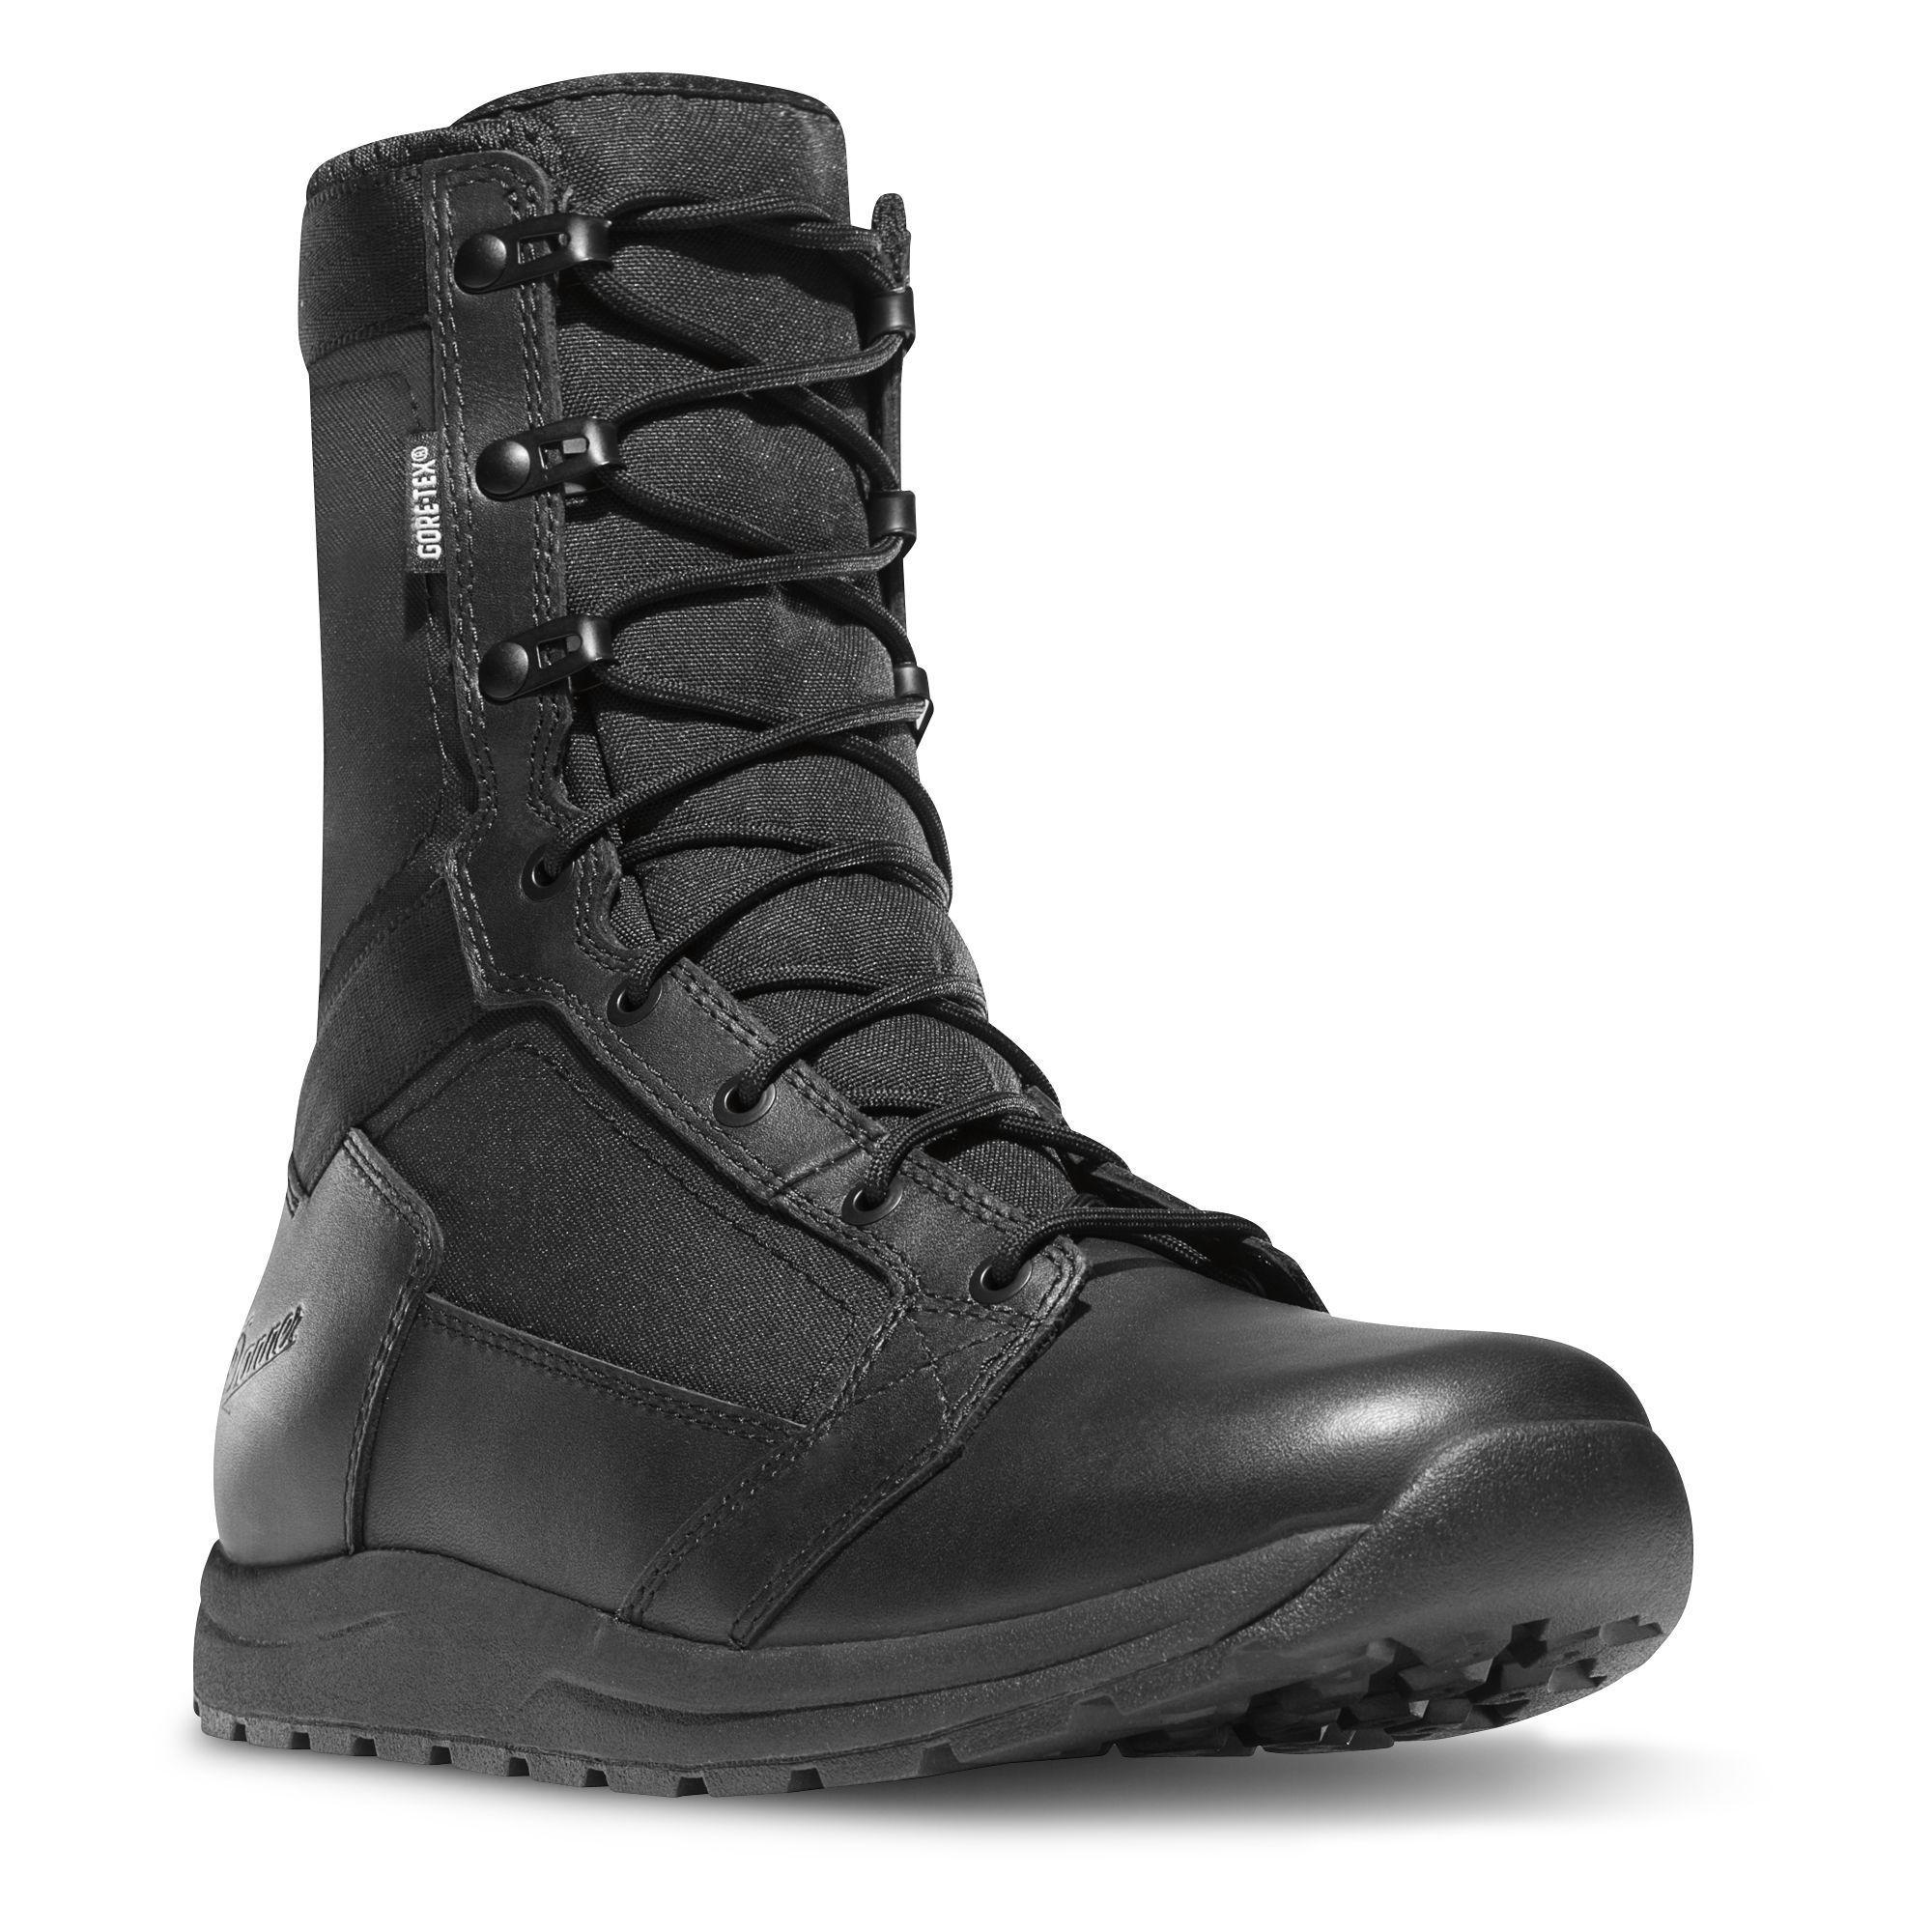 Danner Men's Tachayon Waterproof Duty Boot - Black - 50122 7 / Medium / Black - Overlook Boots